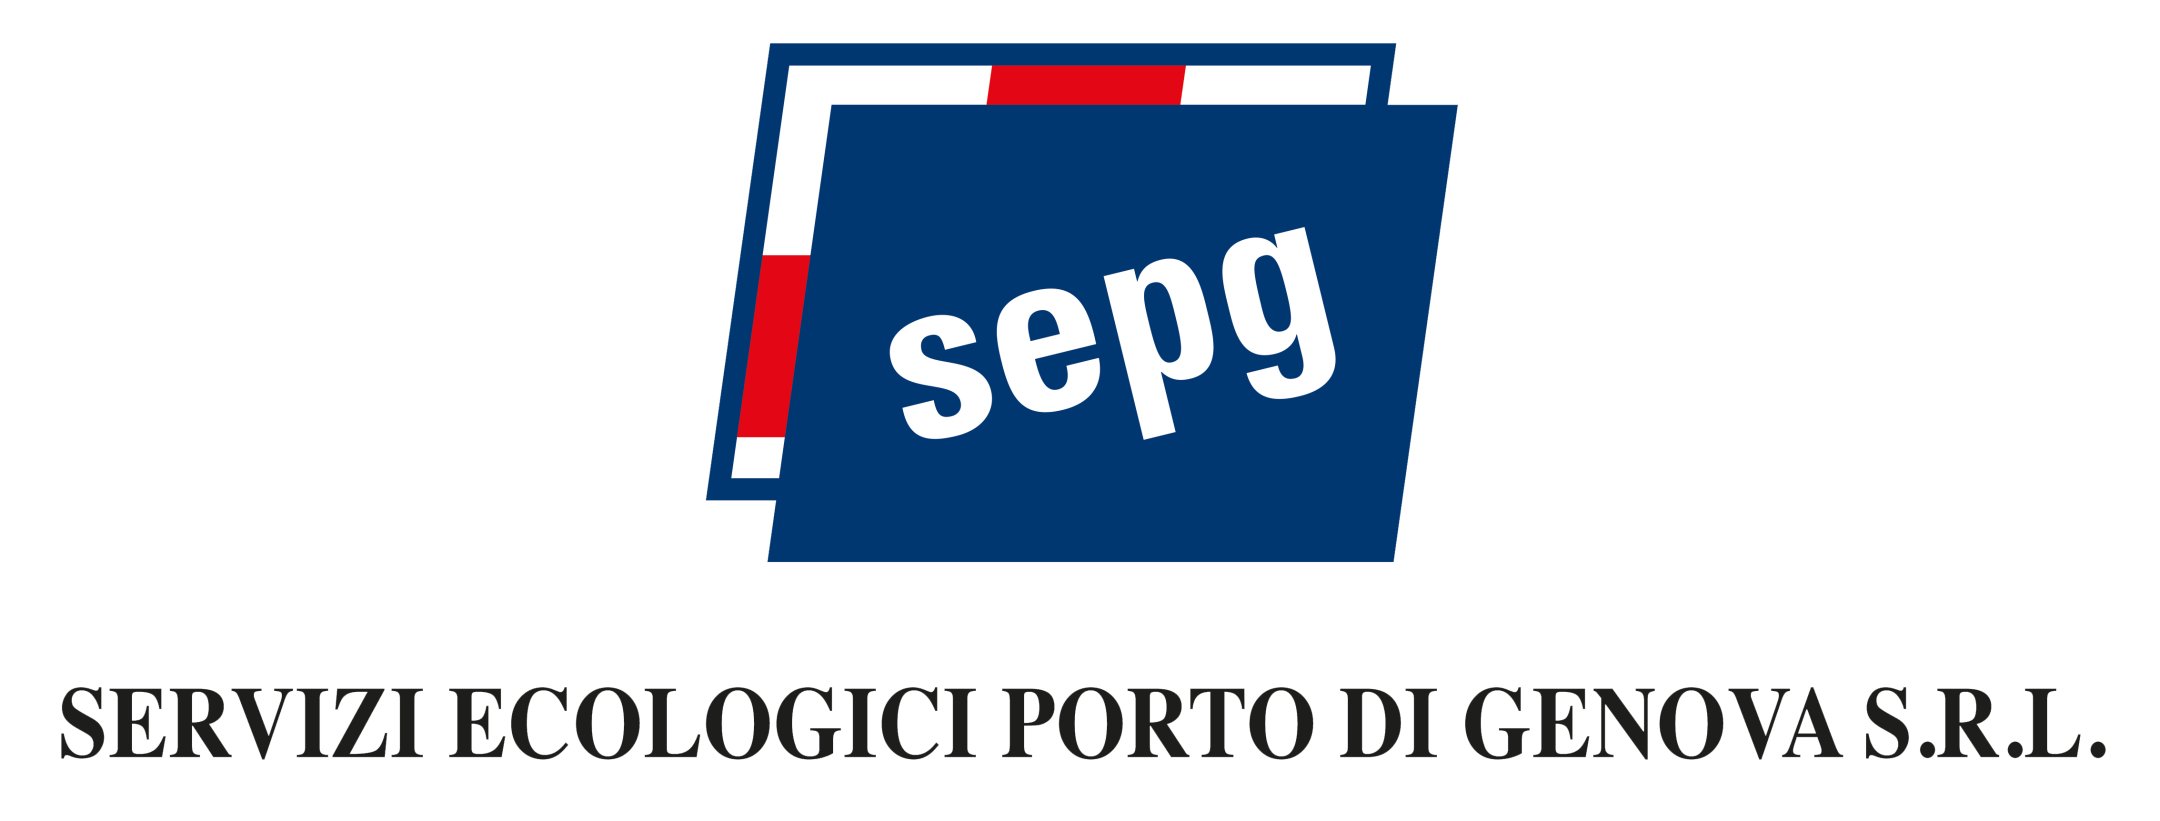 Sepg - Servizi Ecologici Porto di Genova